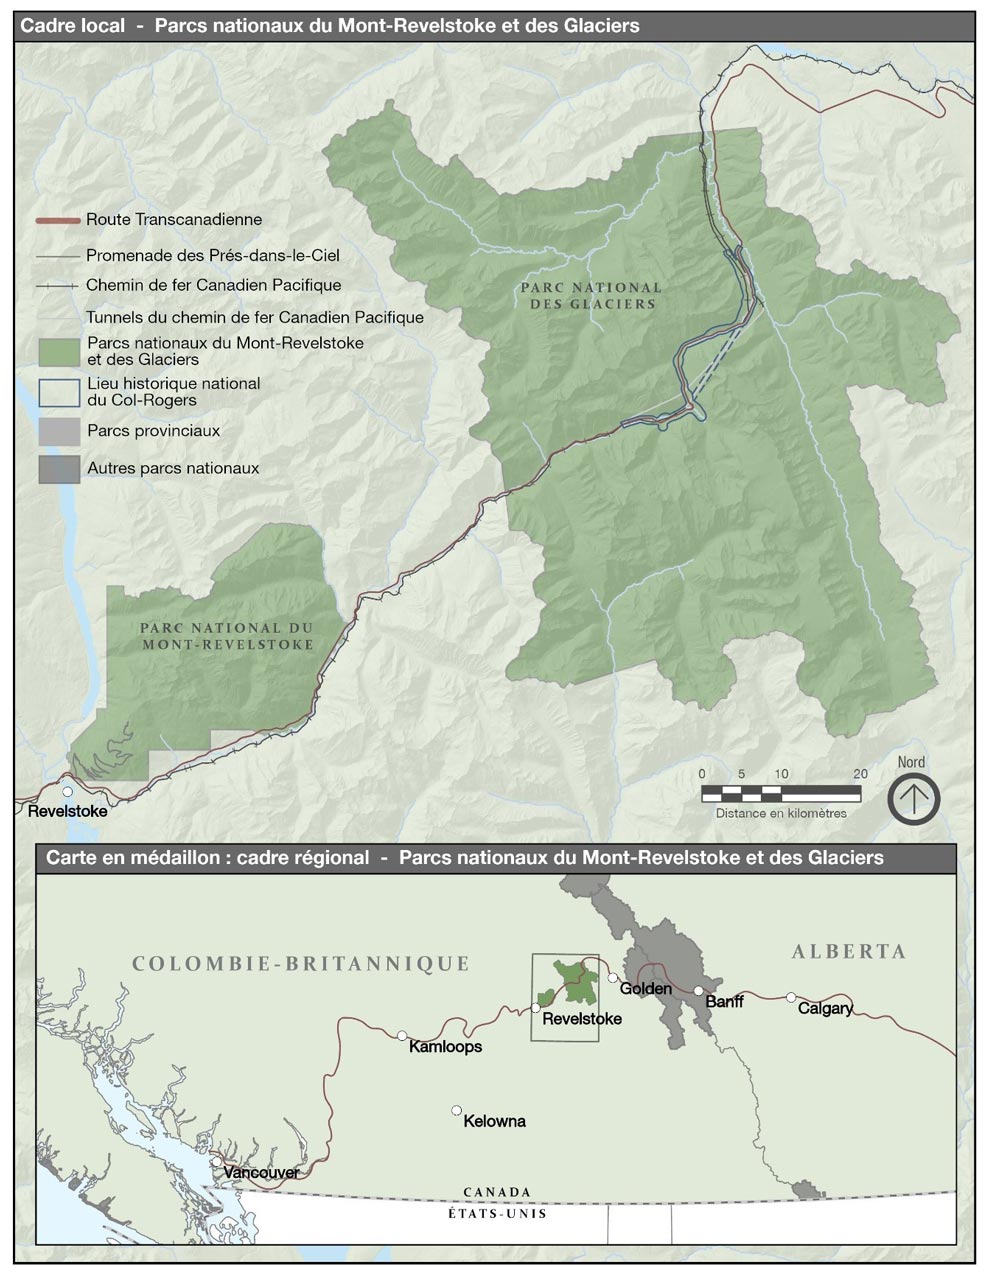 Une carte qui indique l’emplacement des parcs nationaux du Canada du Mont-Revelstoke et des Glaciers et du lieu historique national du Canada du Col-Rogers en Colombie-Britannique.